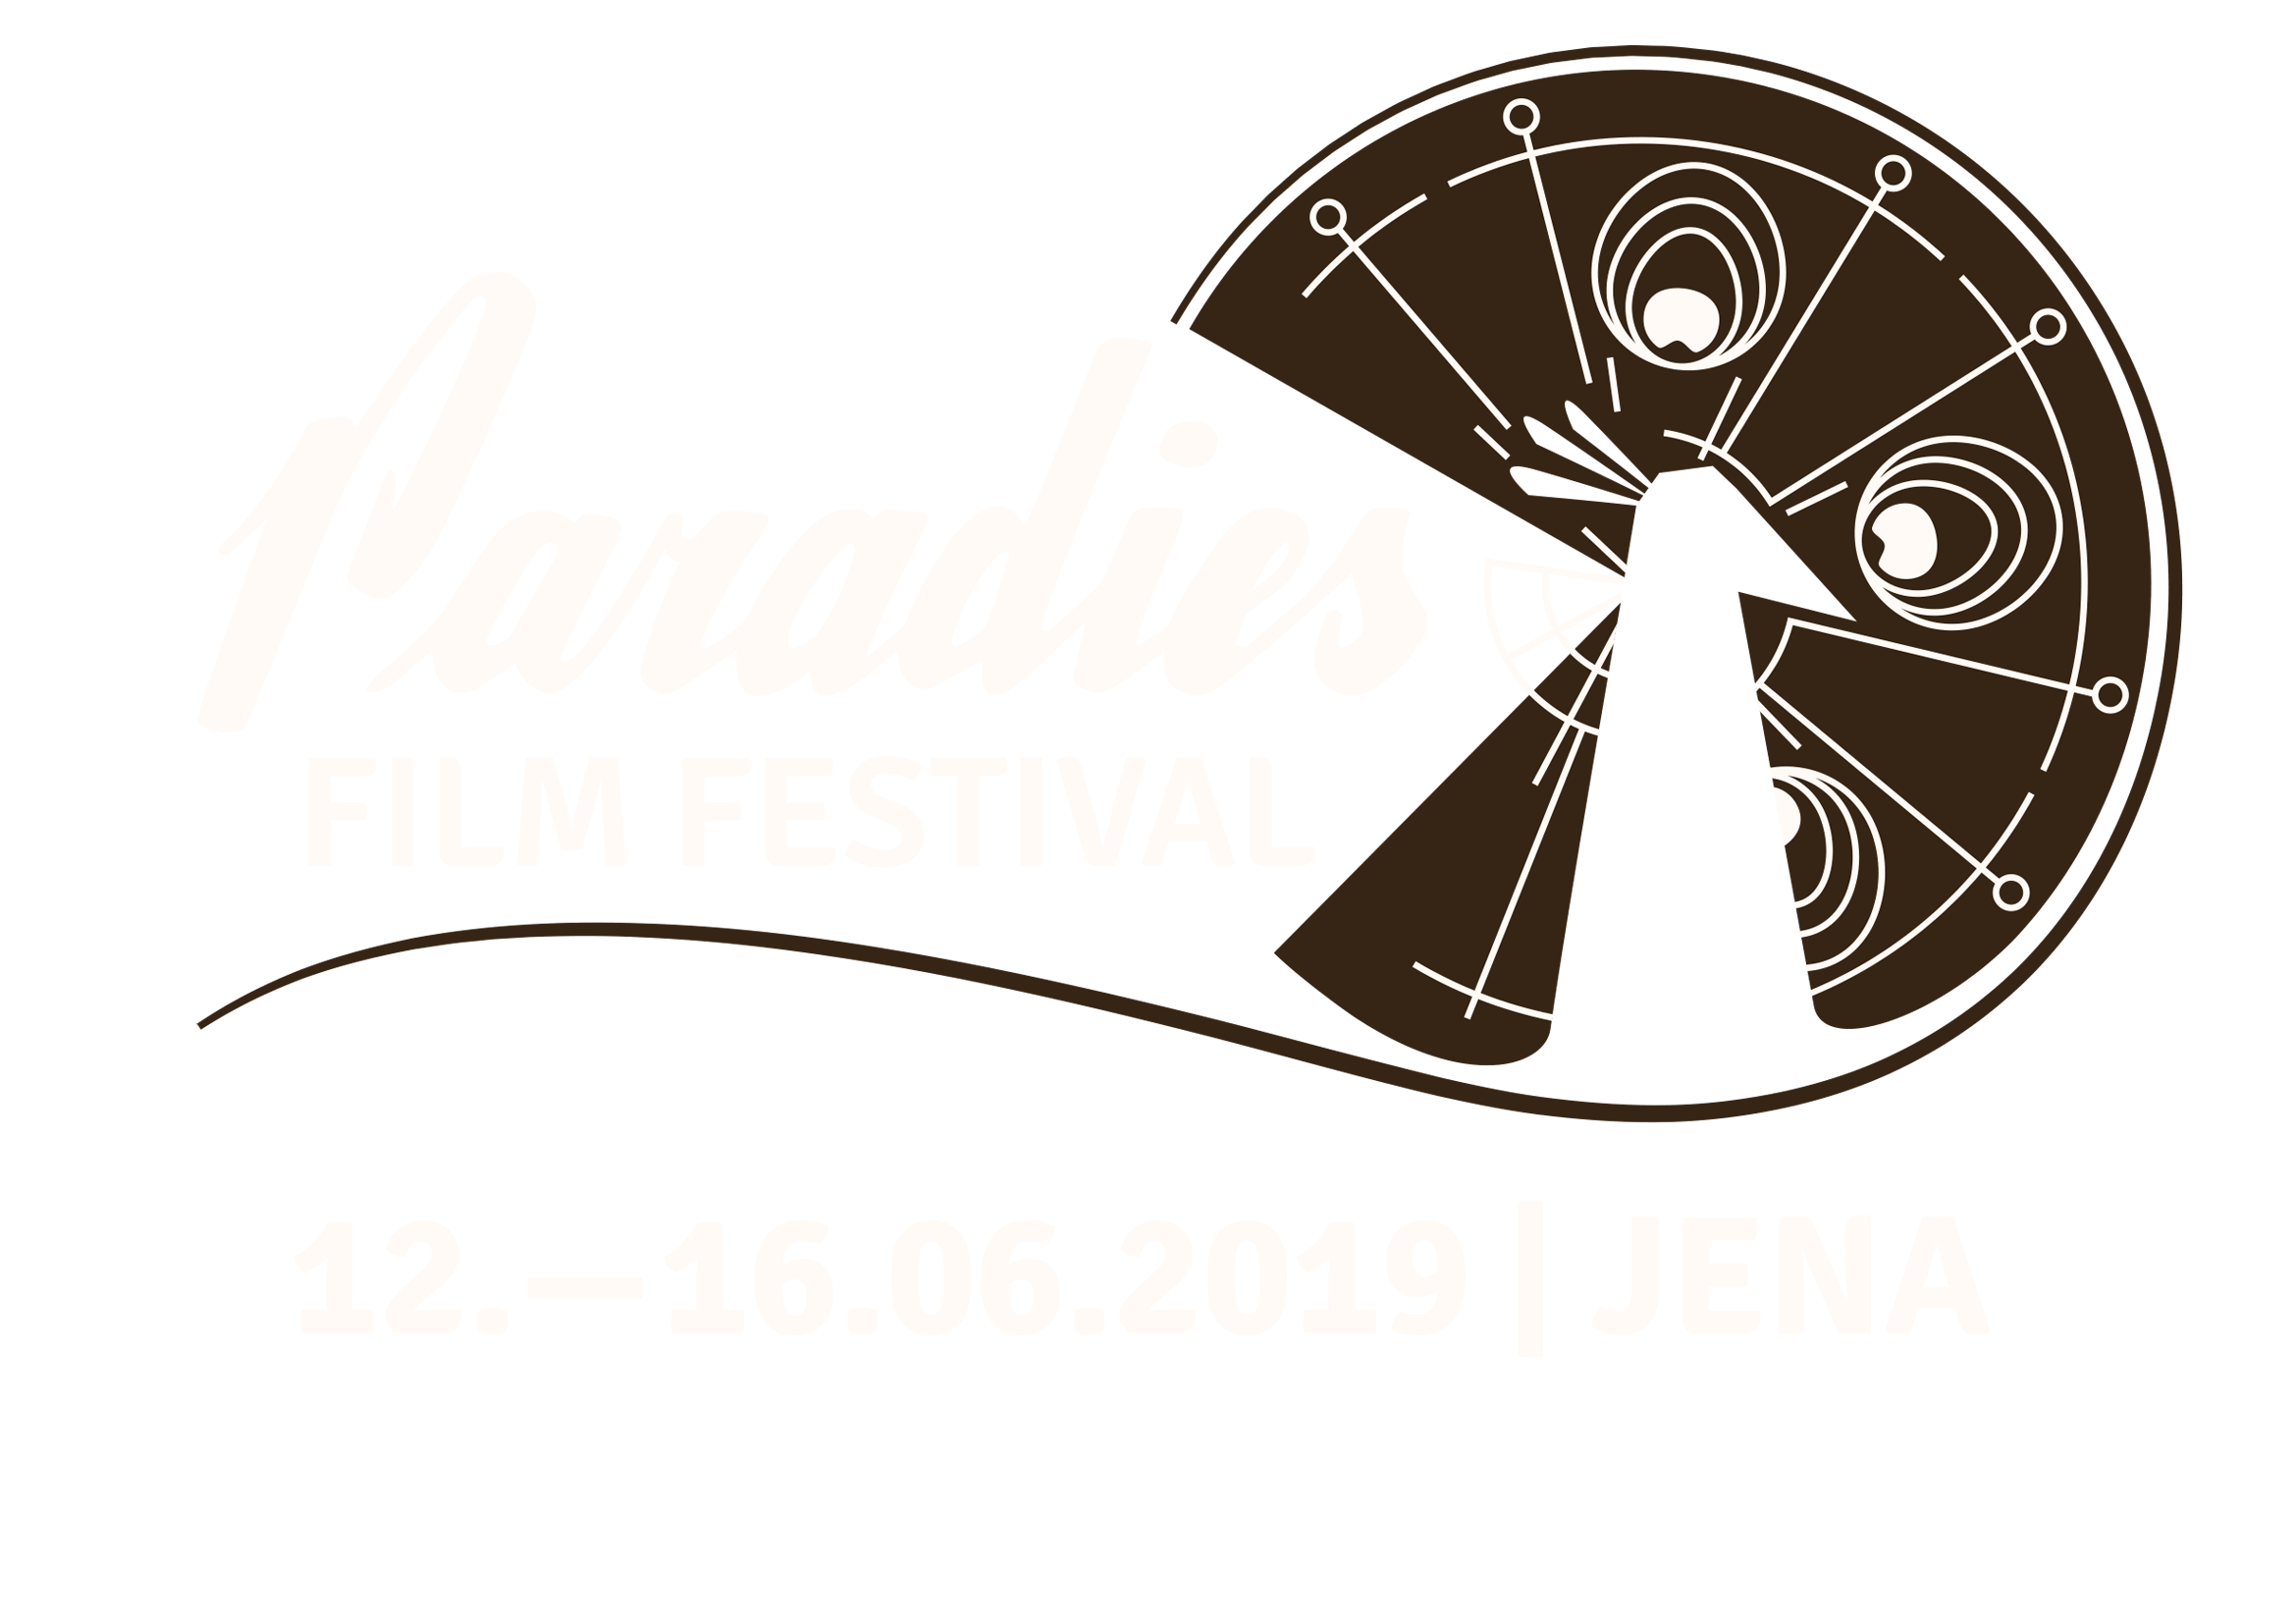 Paradies Film Festival